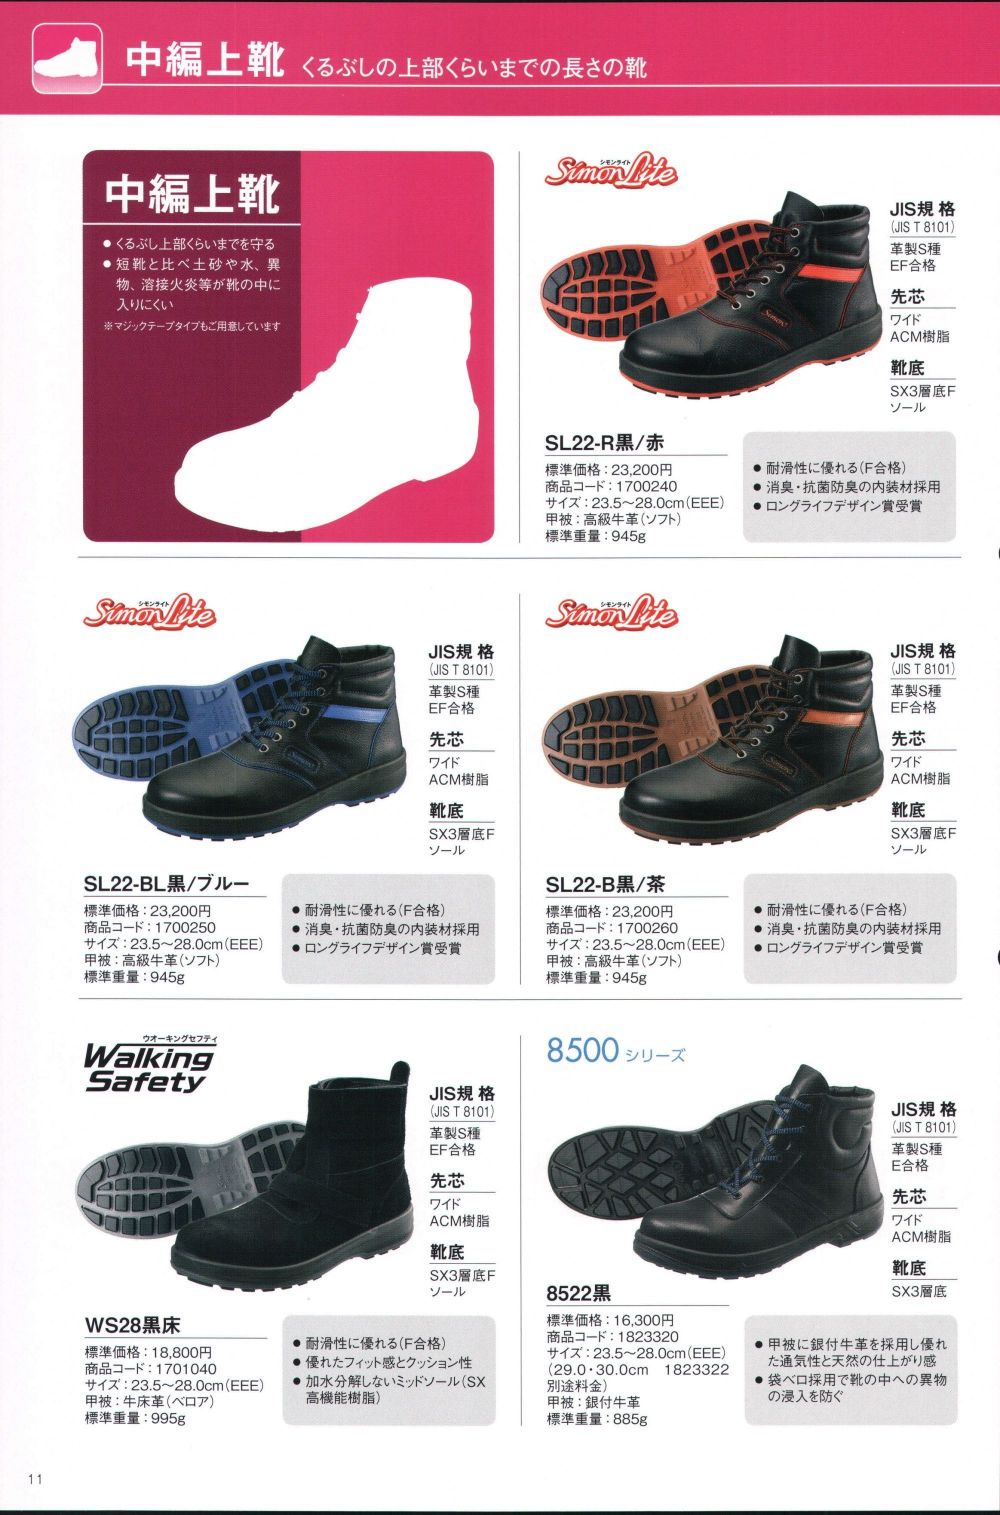 日本メーカー新品 シモン 安全靴 WS 28 黒床 JIS 8101 S種 規格 ベロア 溶接 ワイド 樹脂 先芯 SX 3層 耐滑 ハイカット  ワークブーツ 牛革 現場 作業 セーフティ